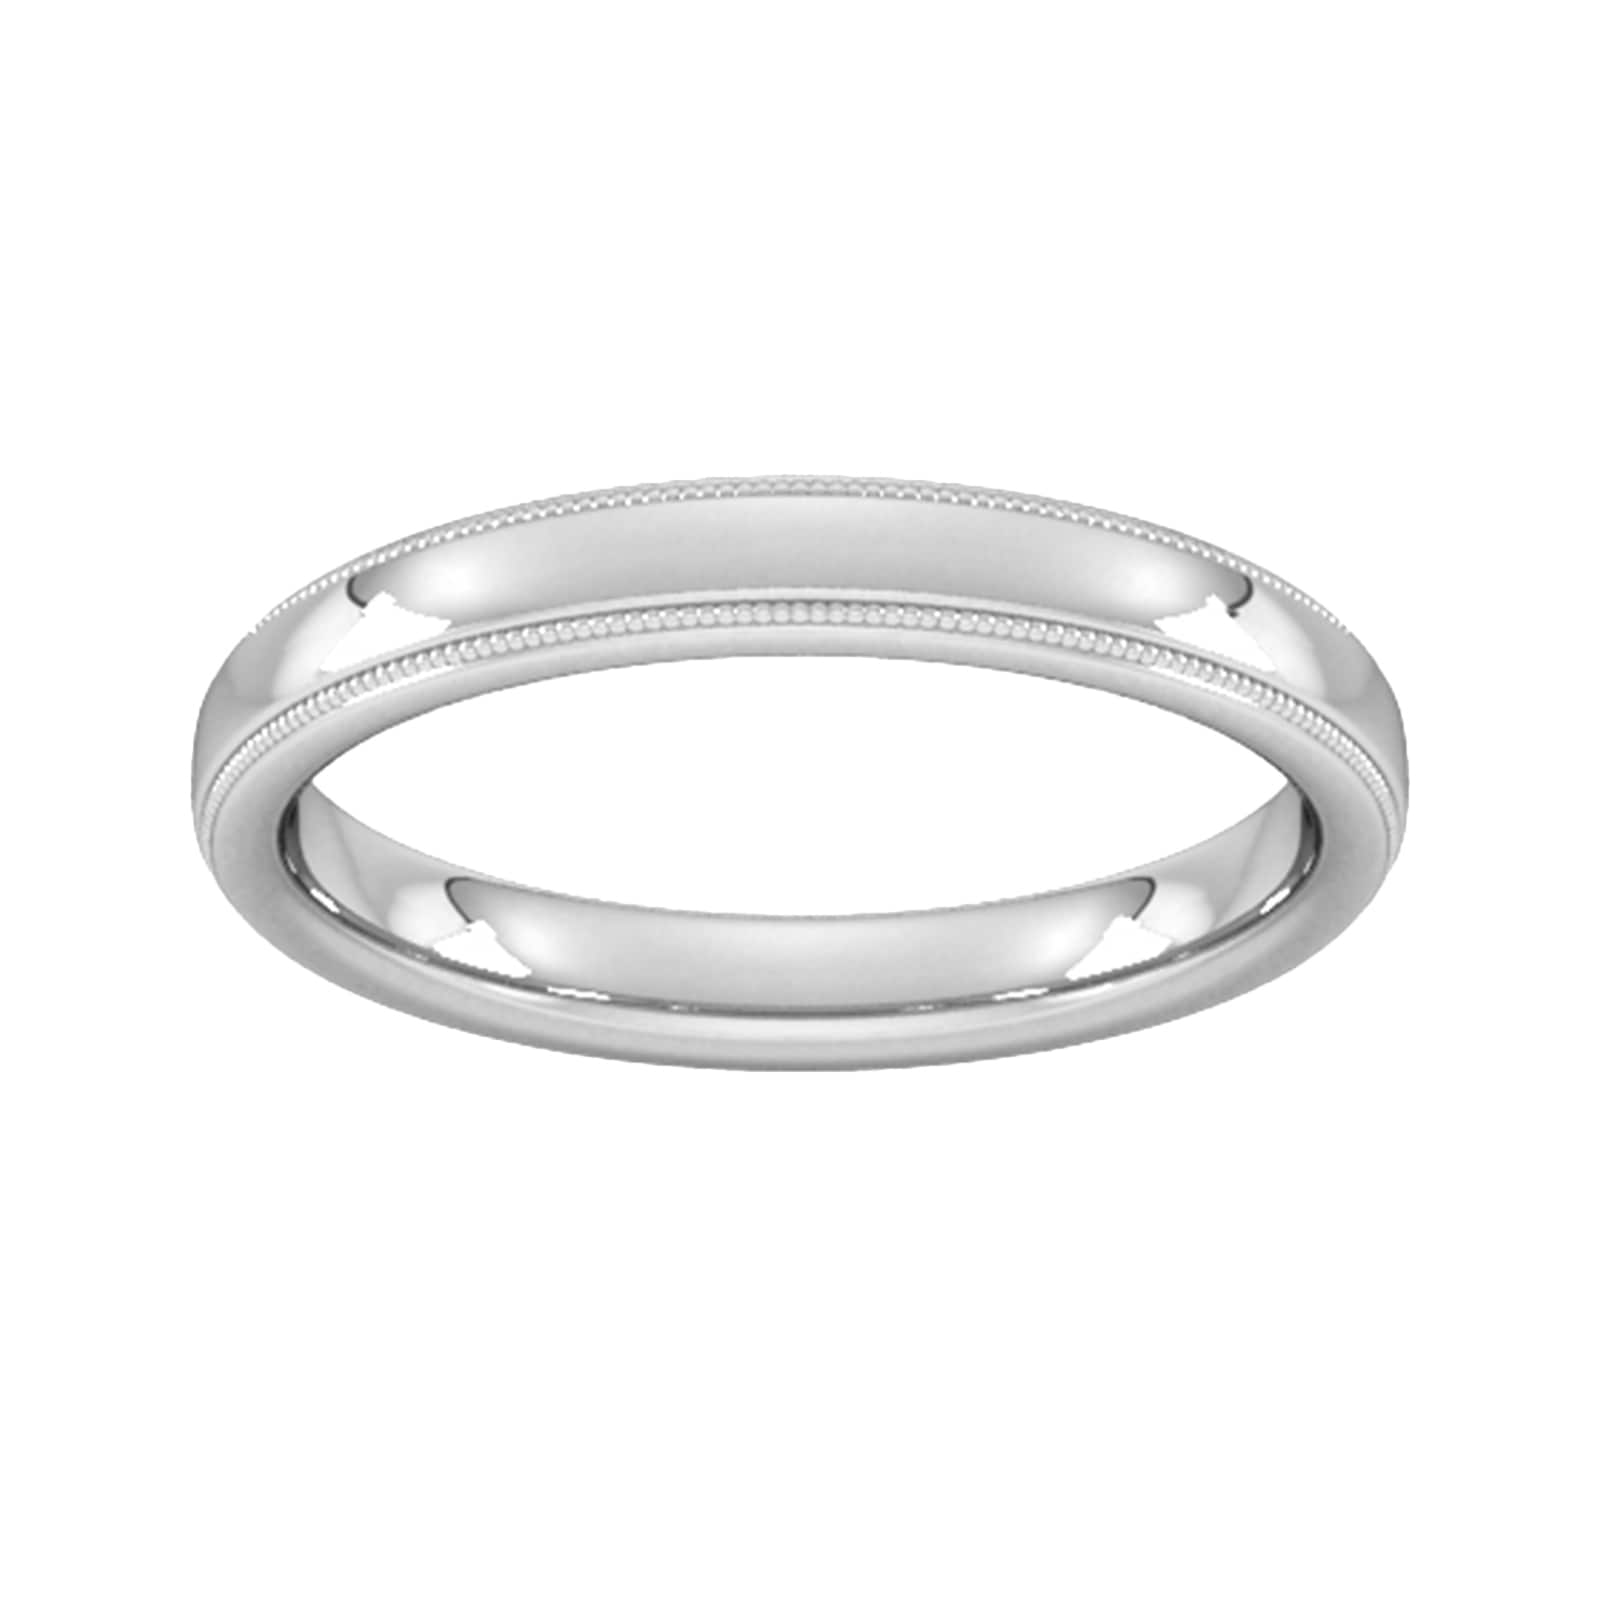 3mm D Shape Standard Milgrain Edge Wedding Ring In 9 Carat White Gold - Ring Size T